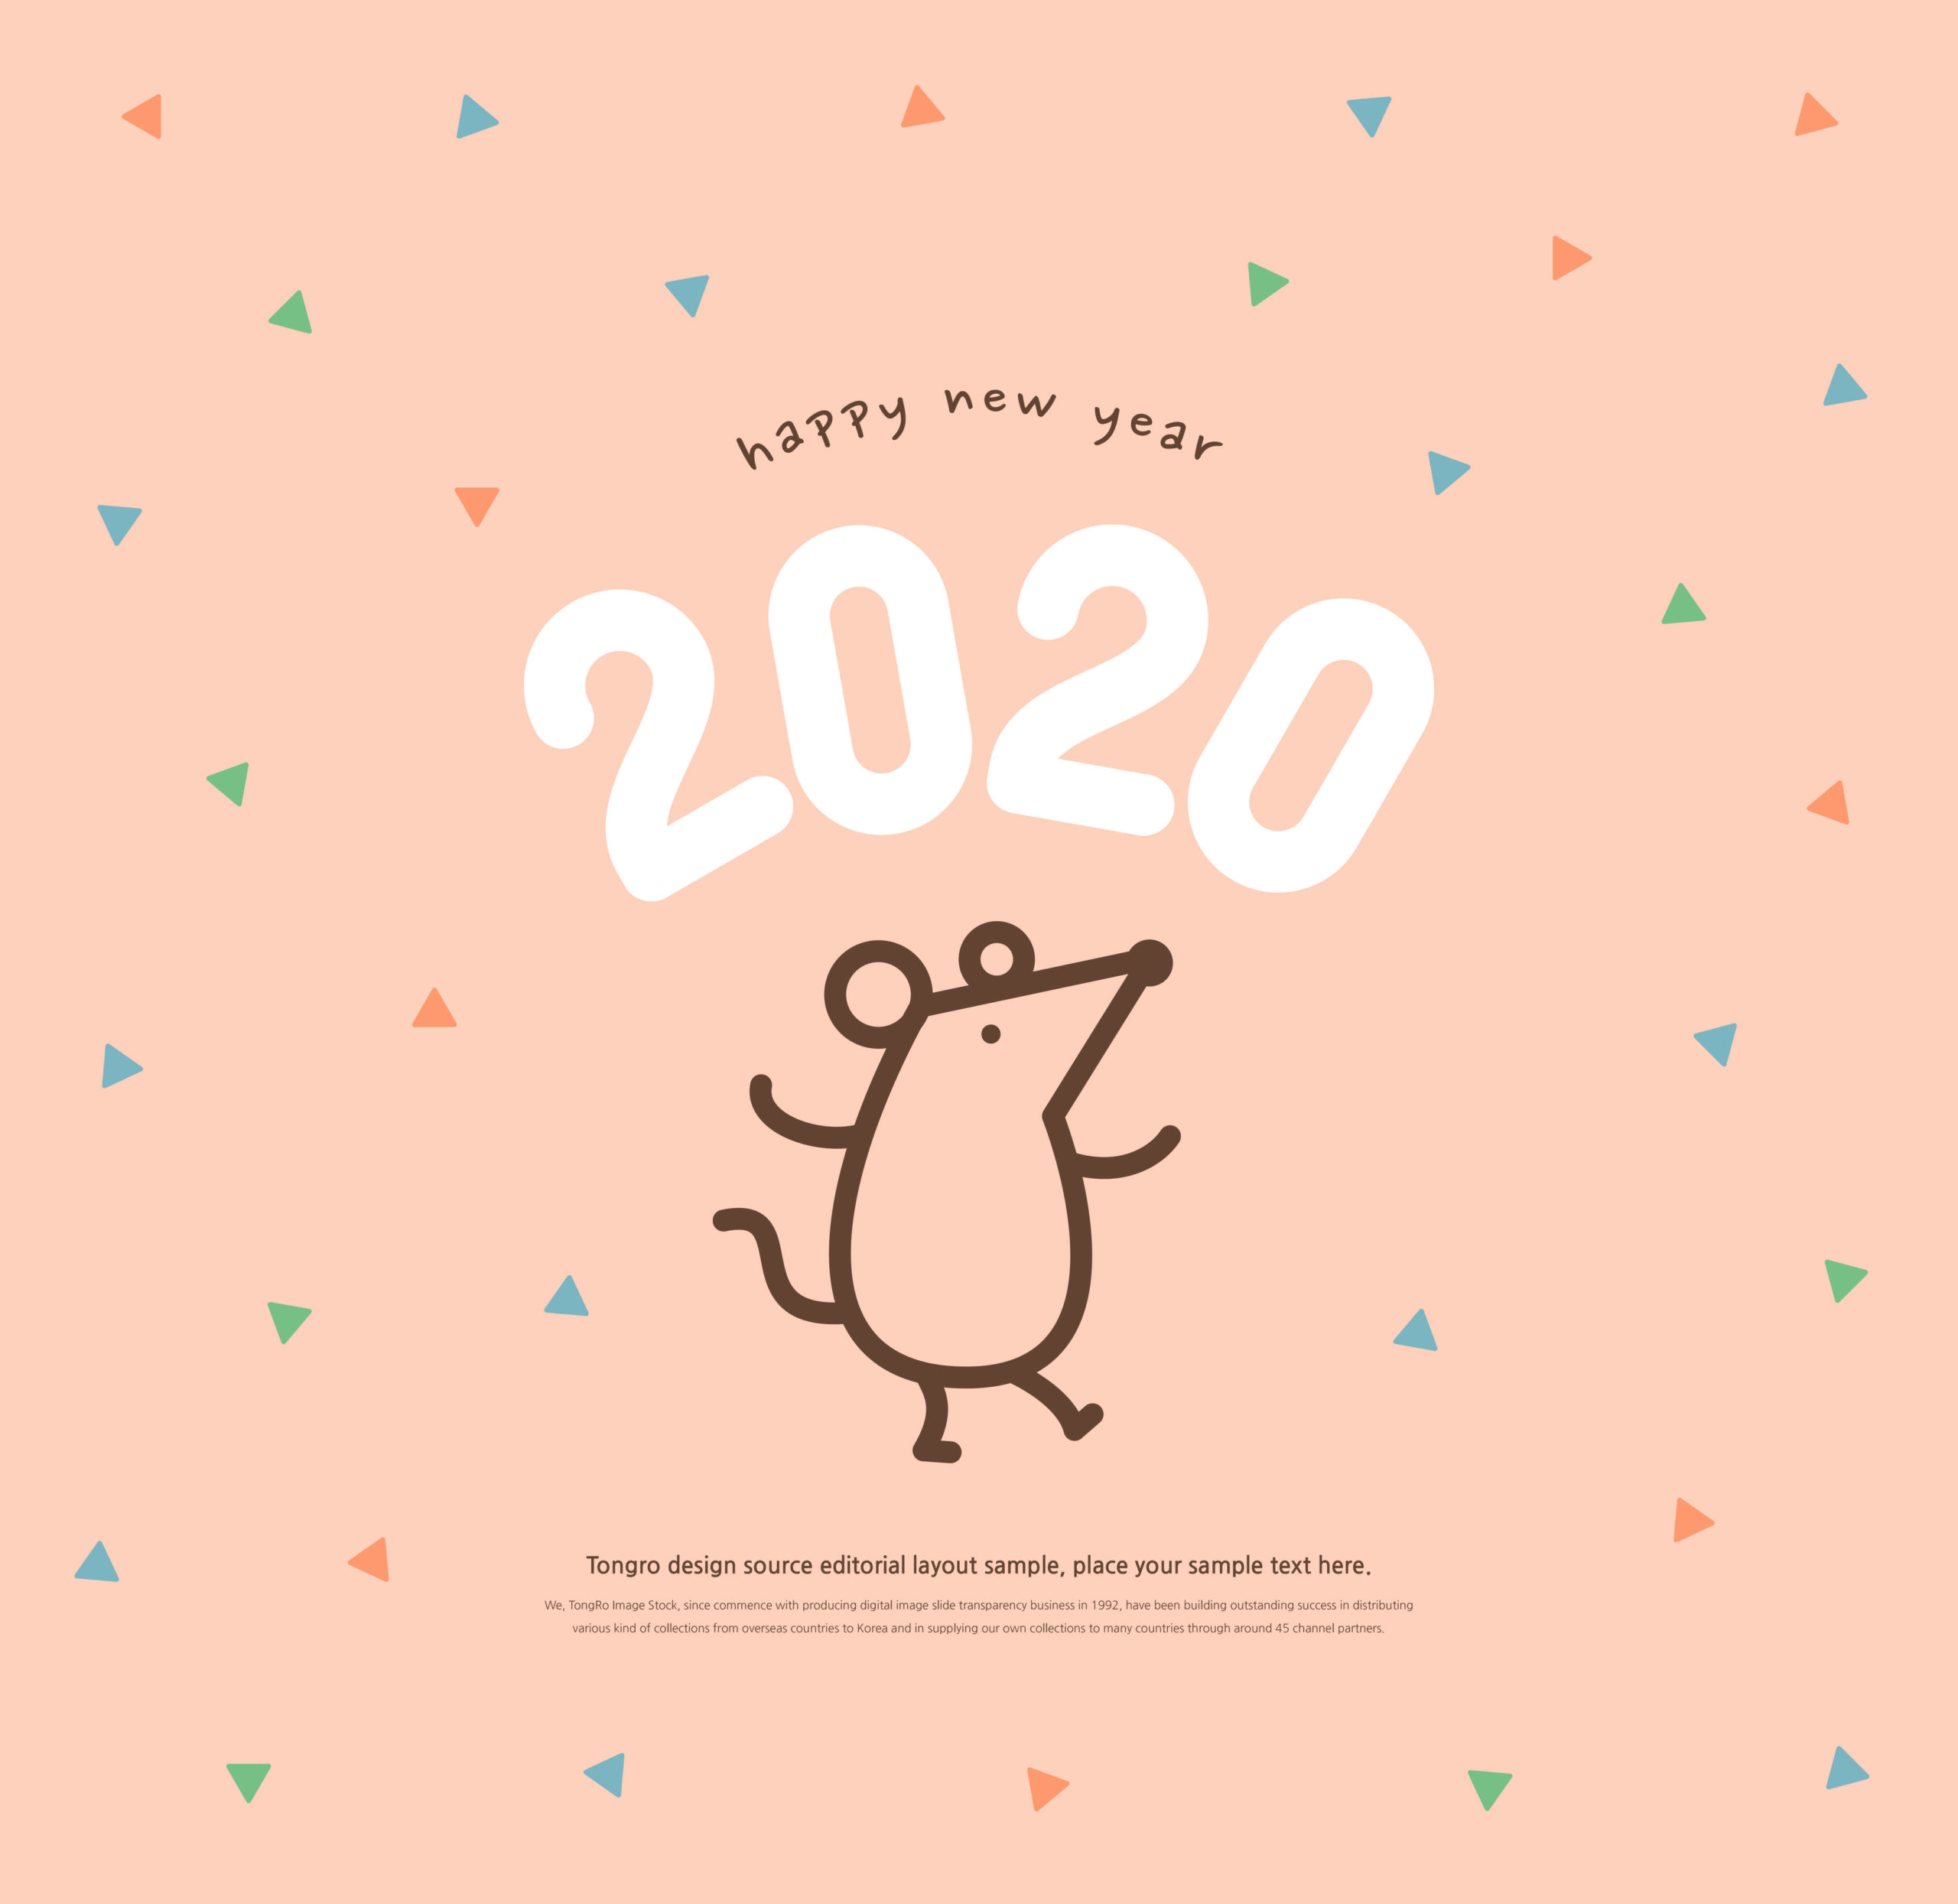 创意可爱的2020鼠年新年快乐祝语方形海报模板套装插图